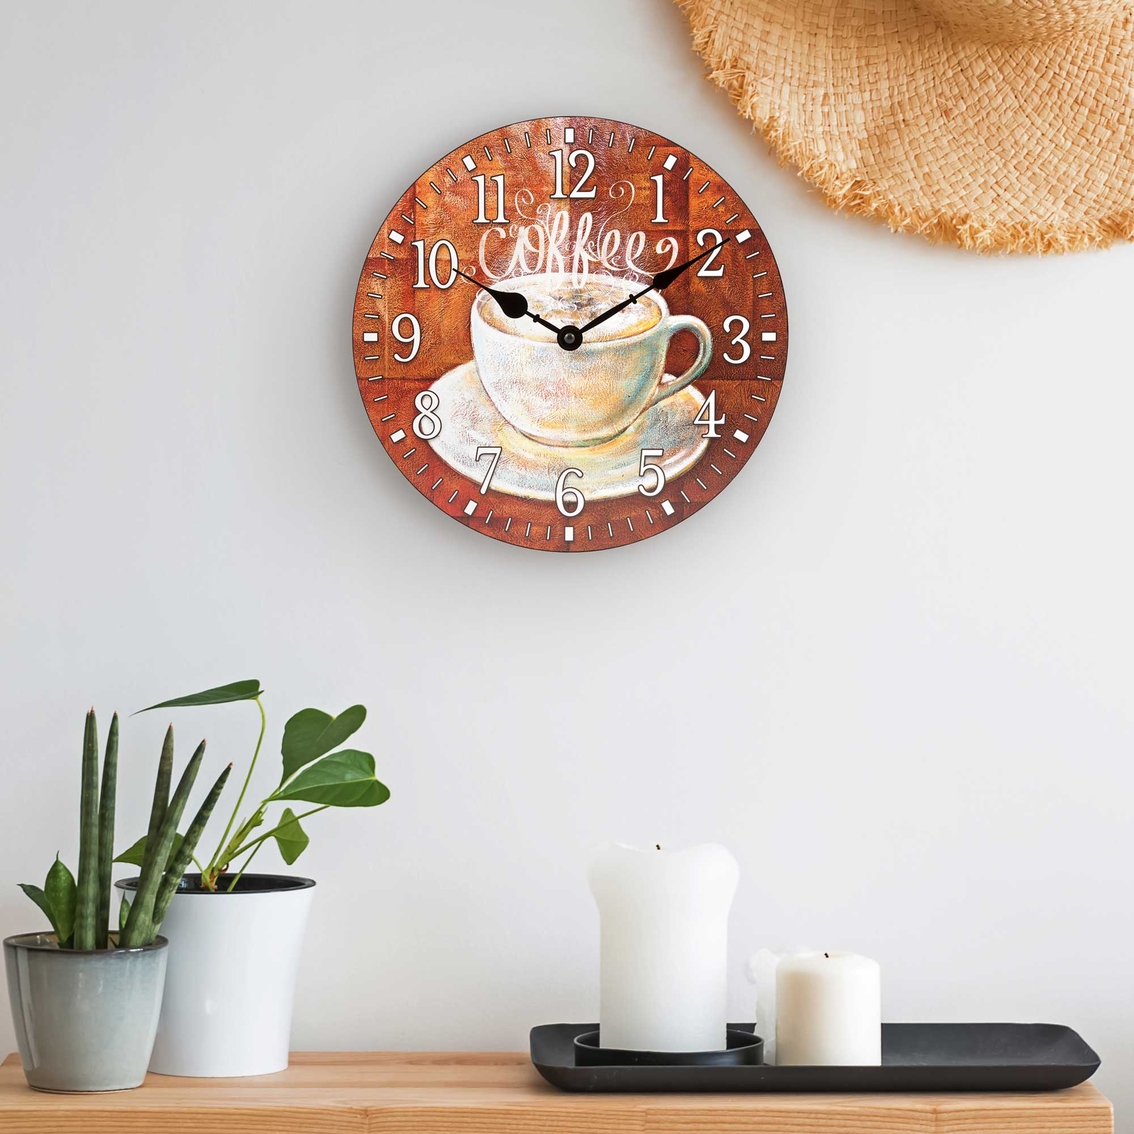 La Crosse 12 in. Coffee Wall Clock - Image 2 of 2